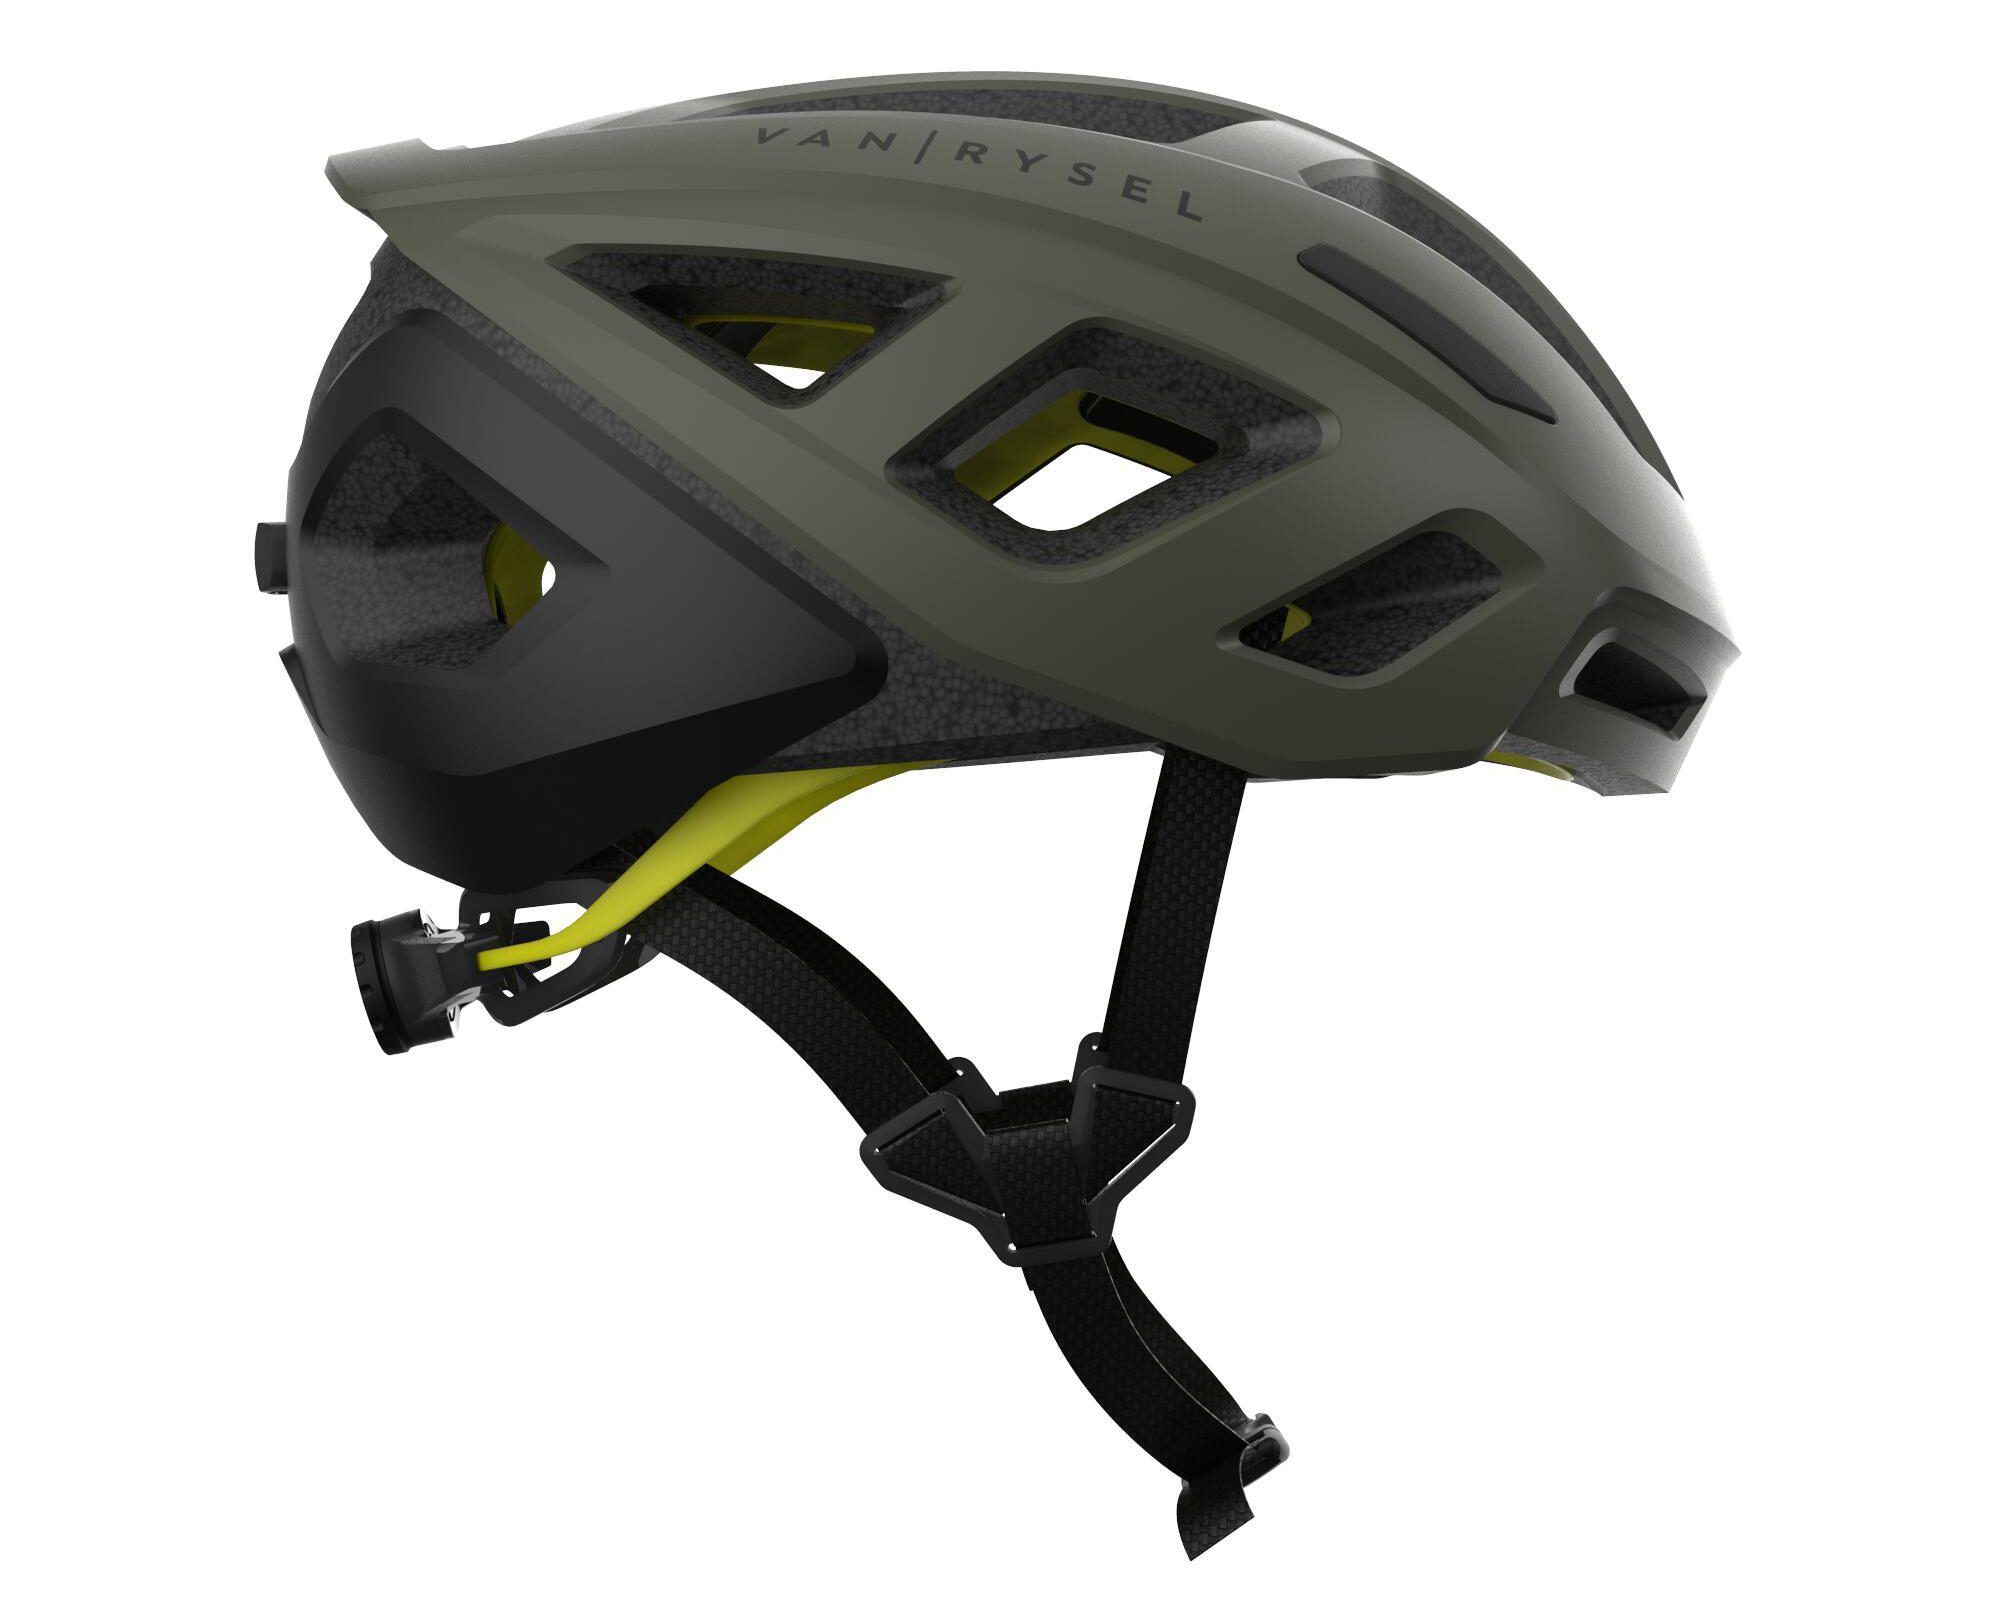 Decathlon lanza un casco para bicicletas eléctricas de carretera a un  precio muy bajo